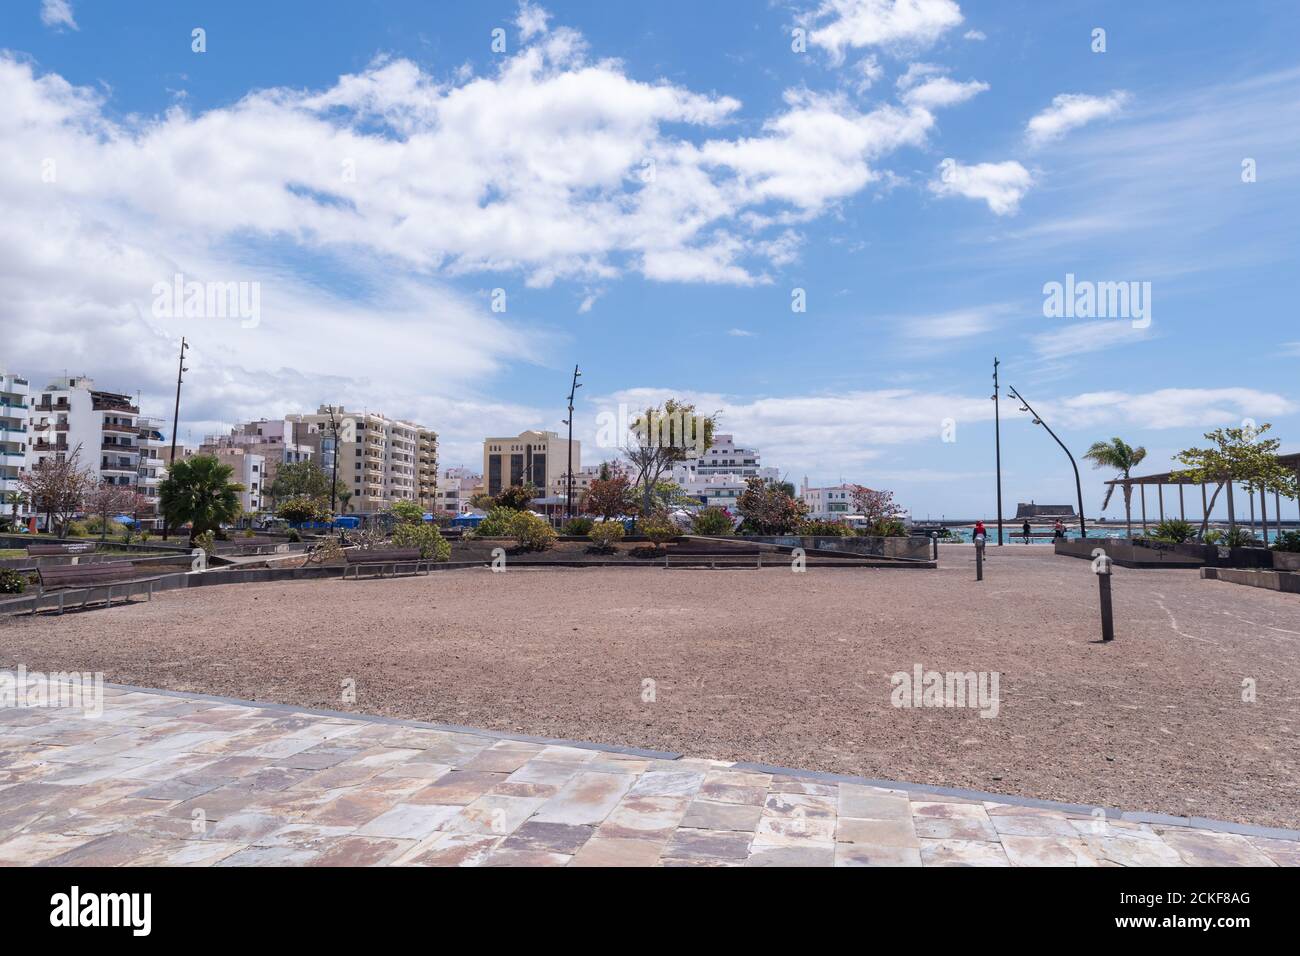 Lanzarote / Espagne - 20 mars 2016: Parc dans le centre de la ville d'Arrecife sur l'île de Lanzarote, îles Canaries, Espagne Banque D'Images